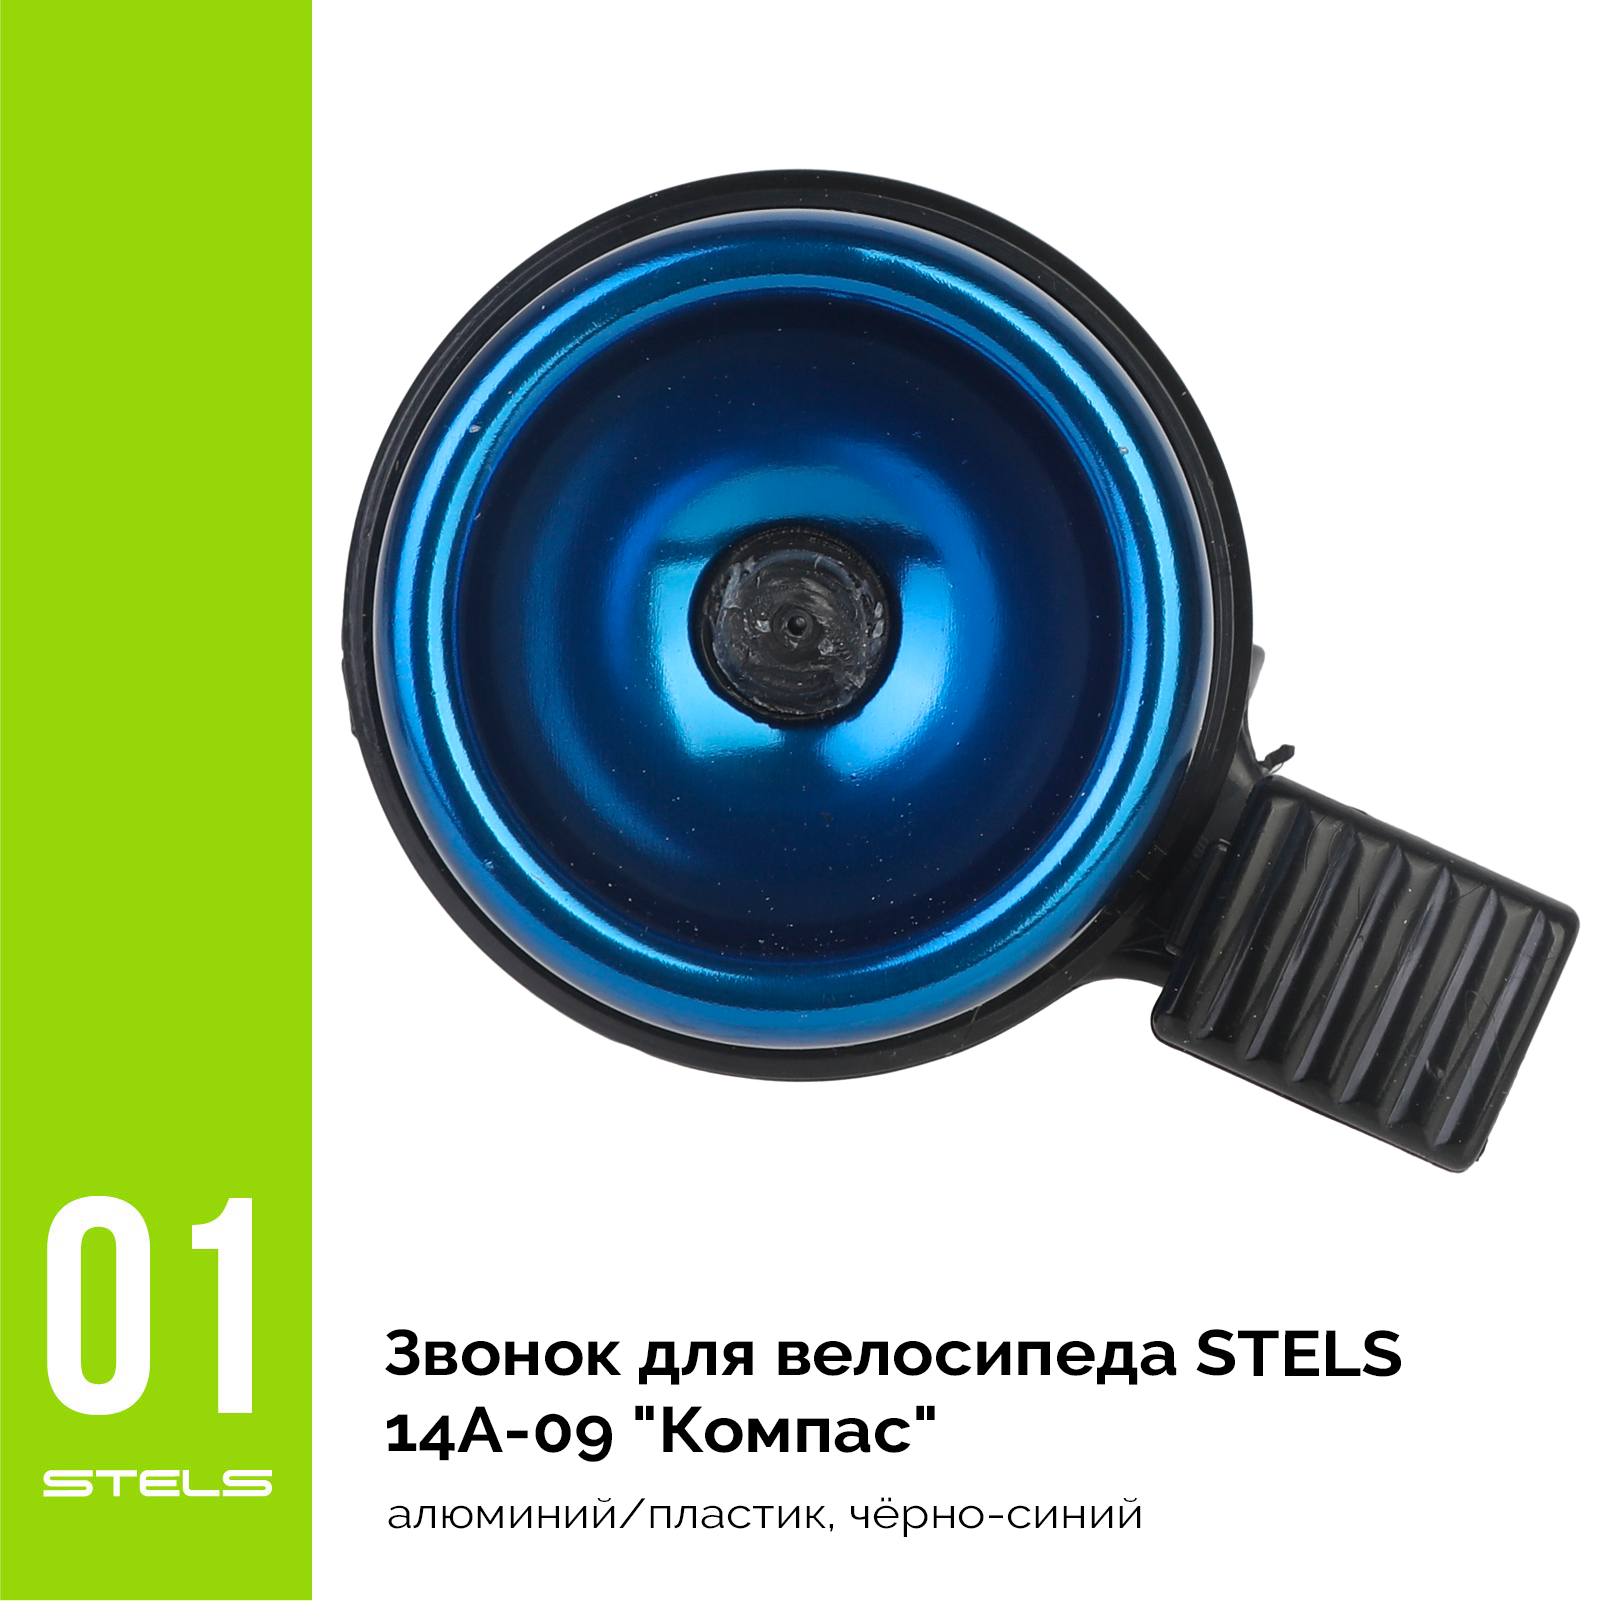 Звонок для велосипеда STELS 14A-09 "Компас" алюминий/пластик, чёрно-синий